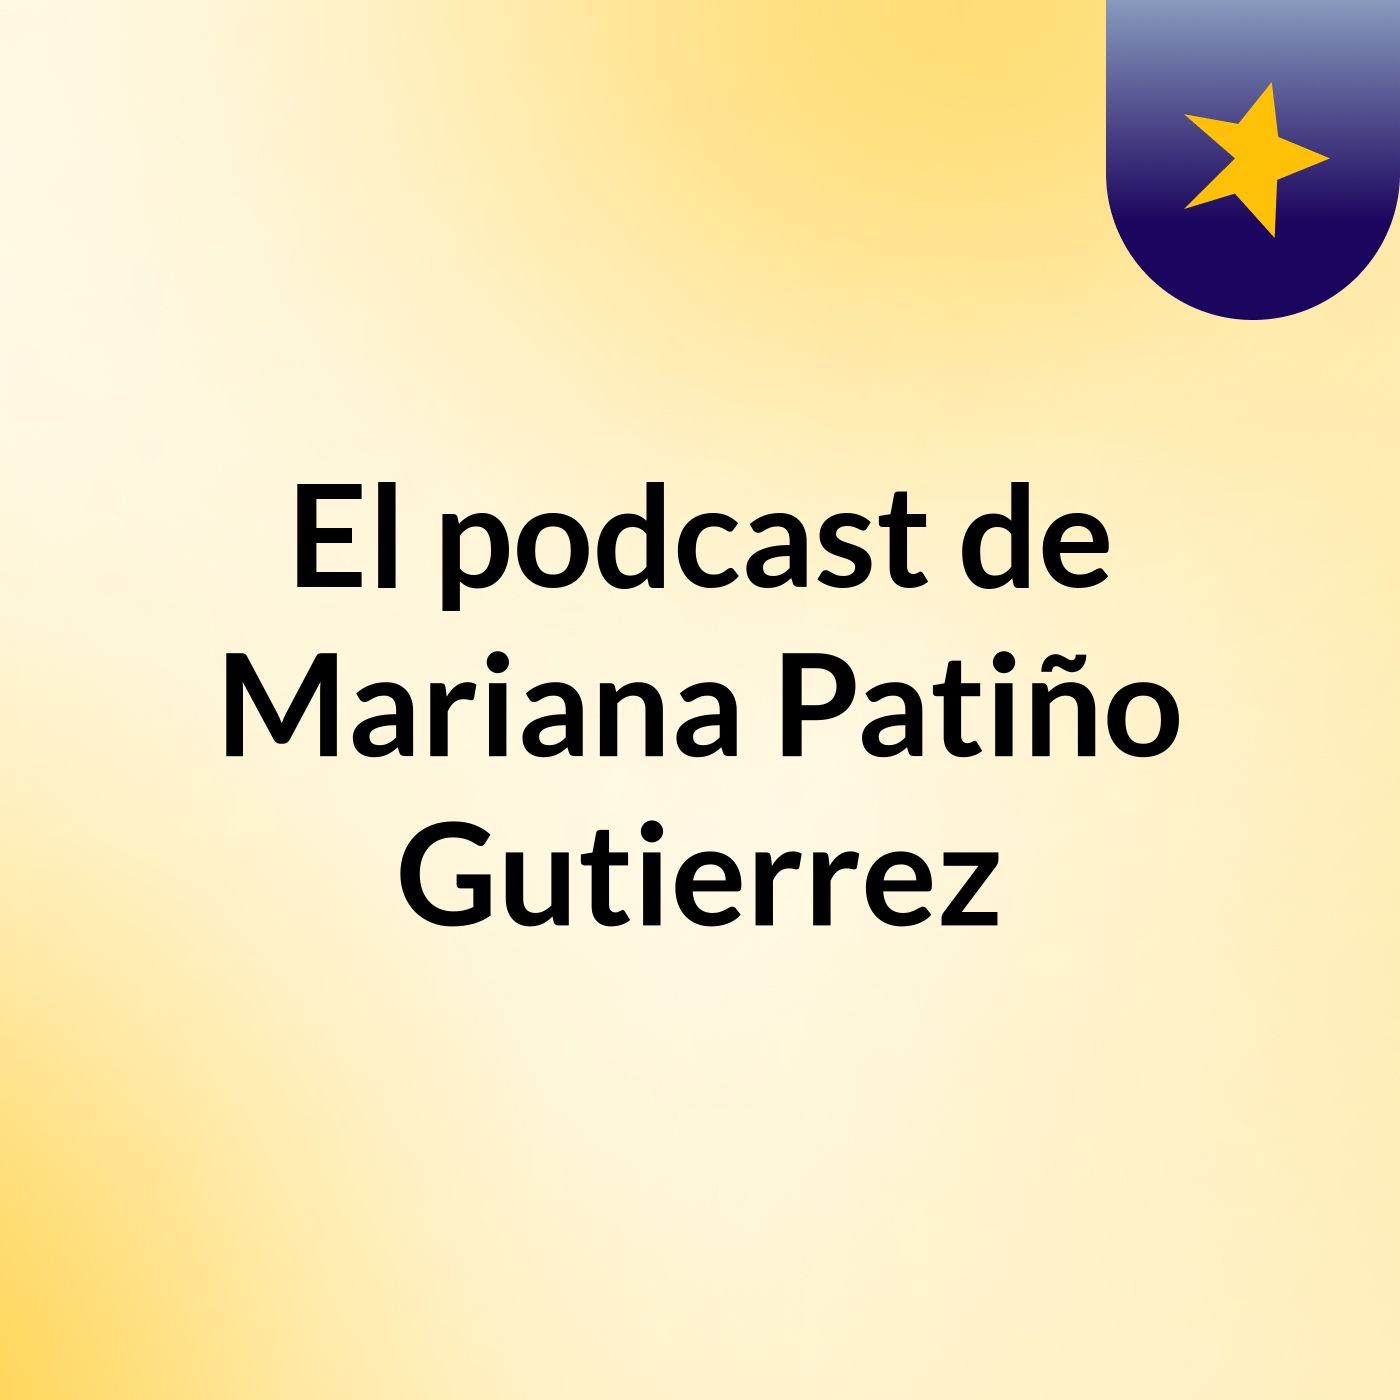 El podcast de Mariana Patiño Gutierrez